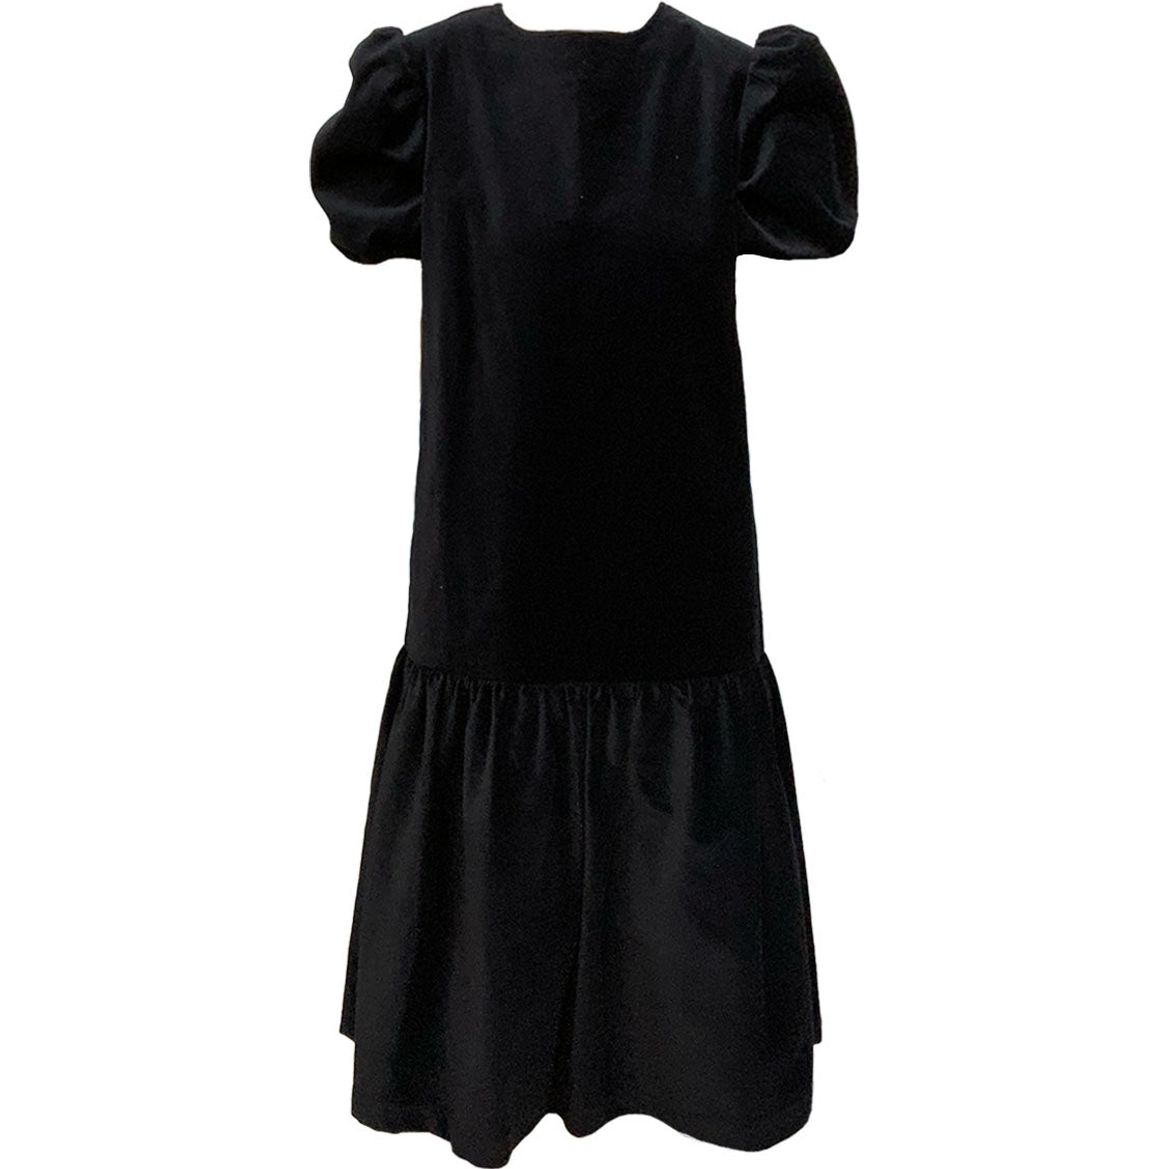 Women's Eugenie Dress in Black Velvet by Casey Marks